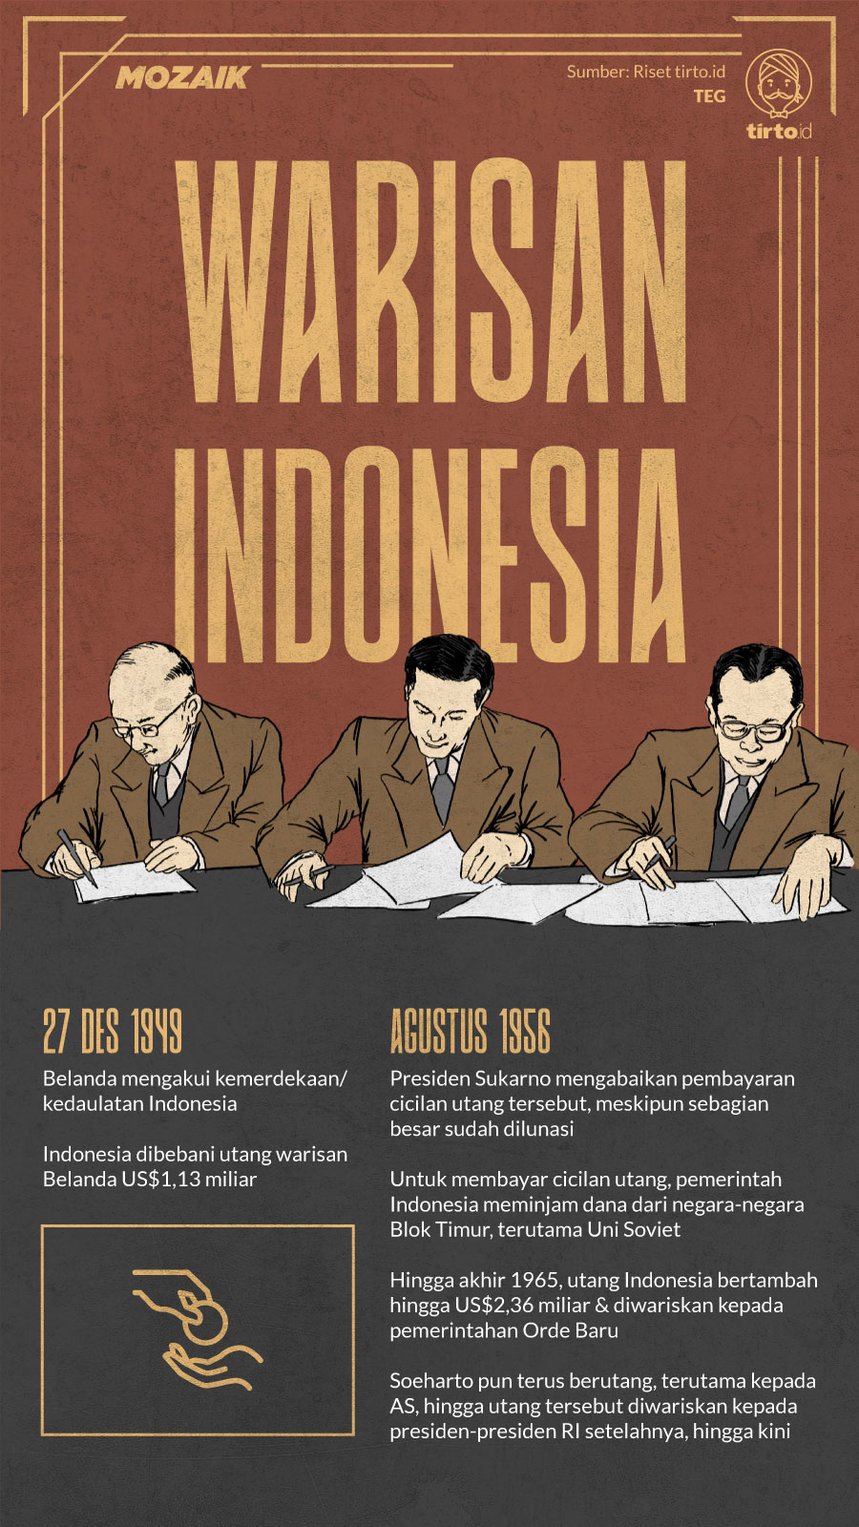 Pengakuan akan kedaulatan negara indonesia didunia internasional terjadi pada tanggal